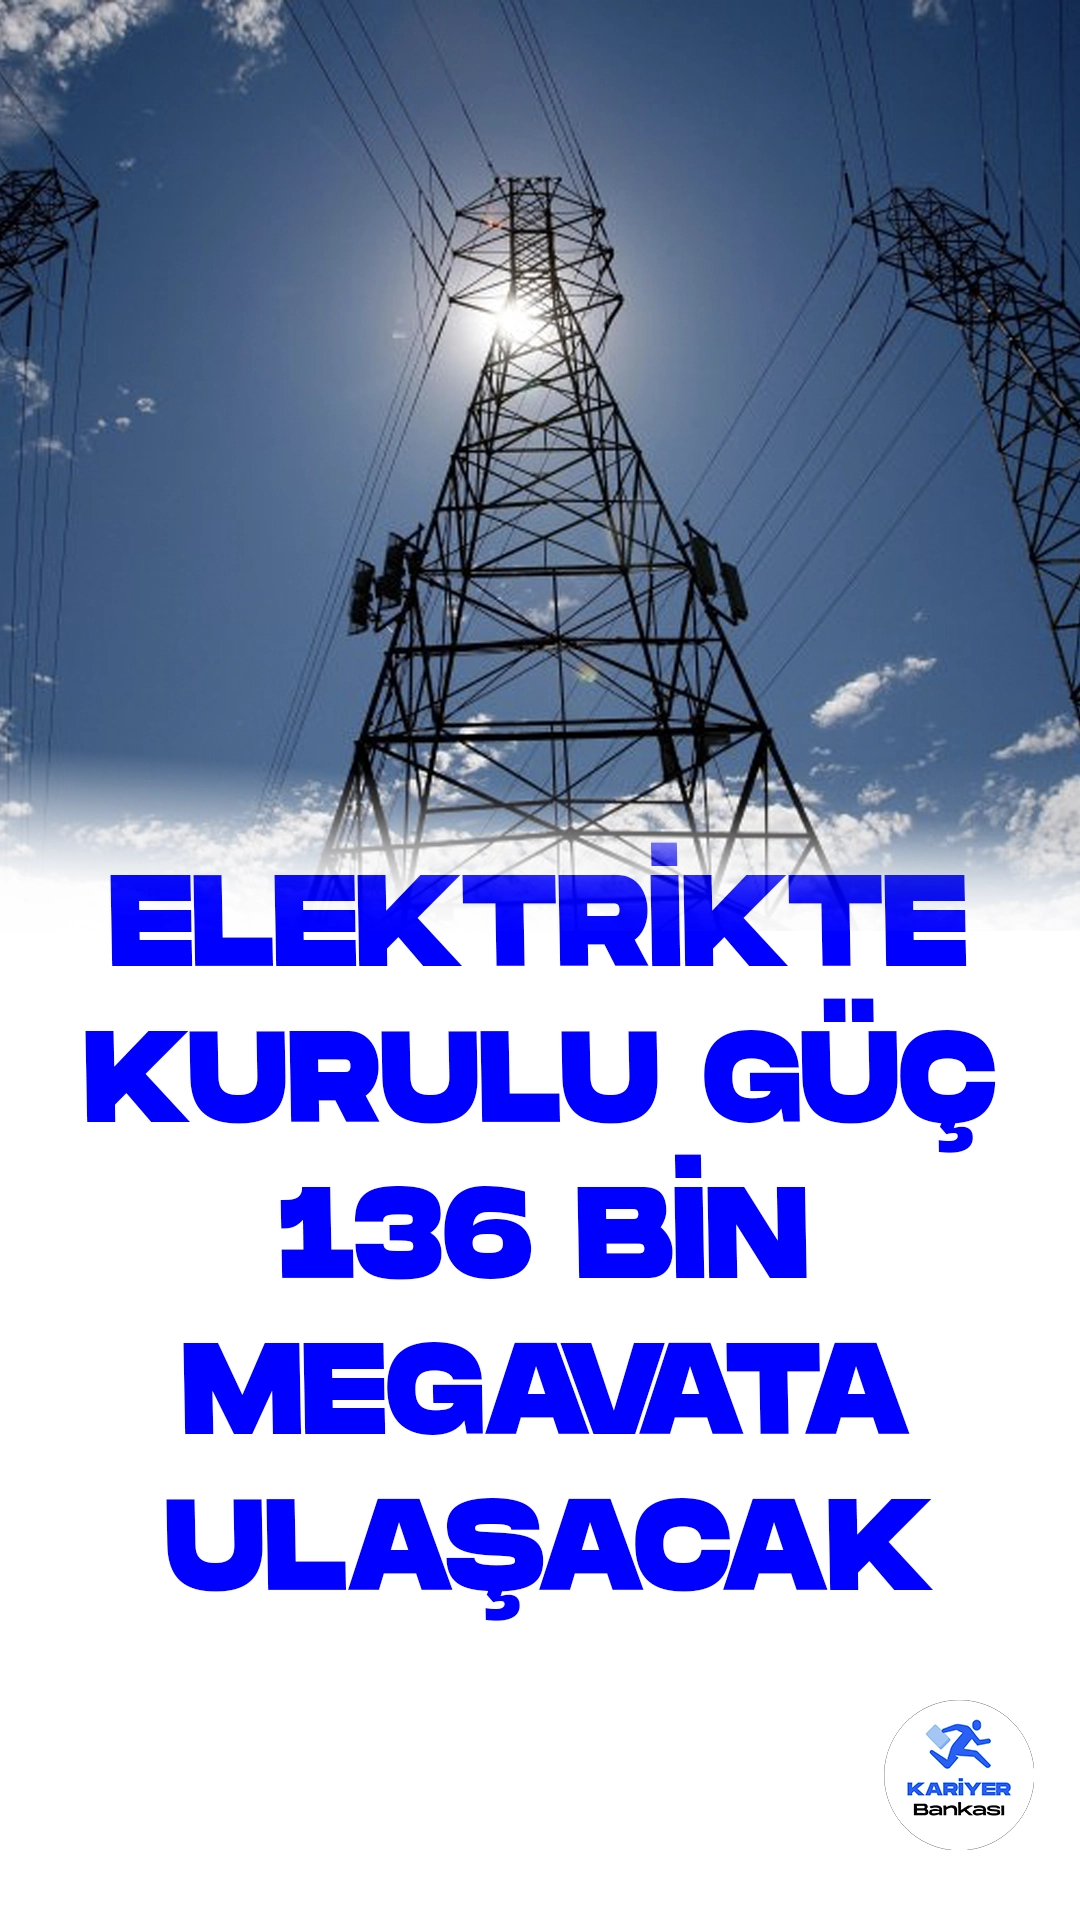 Türkiye, Elektrikte Kurulu Gücünü %27 Artırarak 136 Bin Megavata Çıkarmayı Hedefliyor.Türkiye'nin elektrikte kurulu gücünü, Enerji ve Tabii Kaynaklar Bakanlığı'nın X sosyal medya hesabından yaptığı duyuru ile 2028'e kadar %27 artırarak 136 bin megavata çıkarmayı planladığı belirtildi.